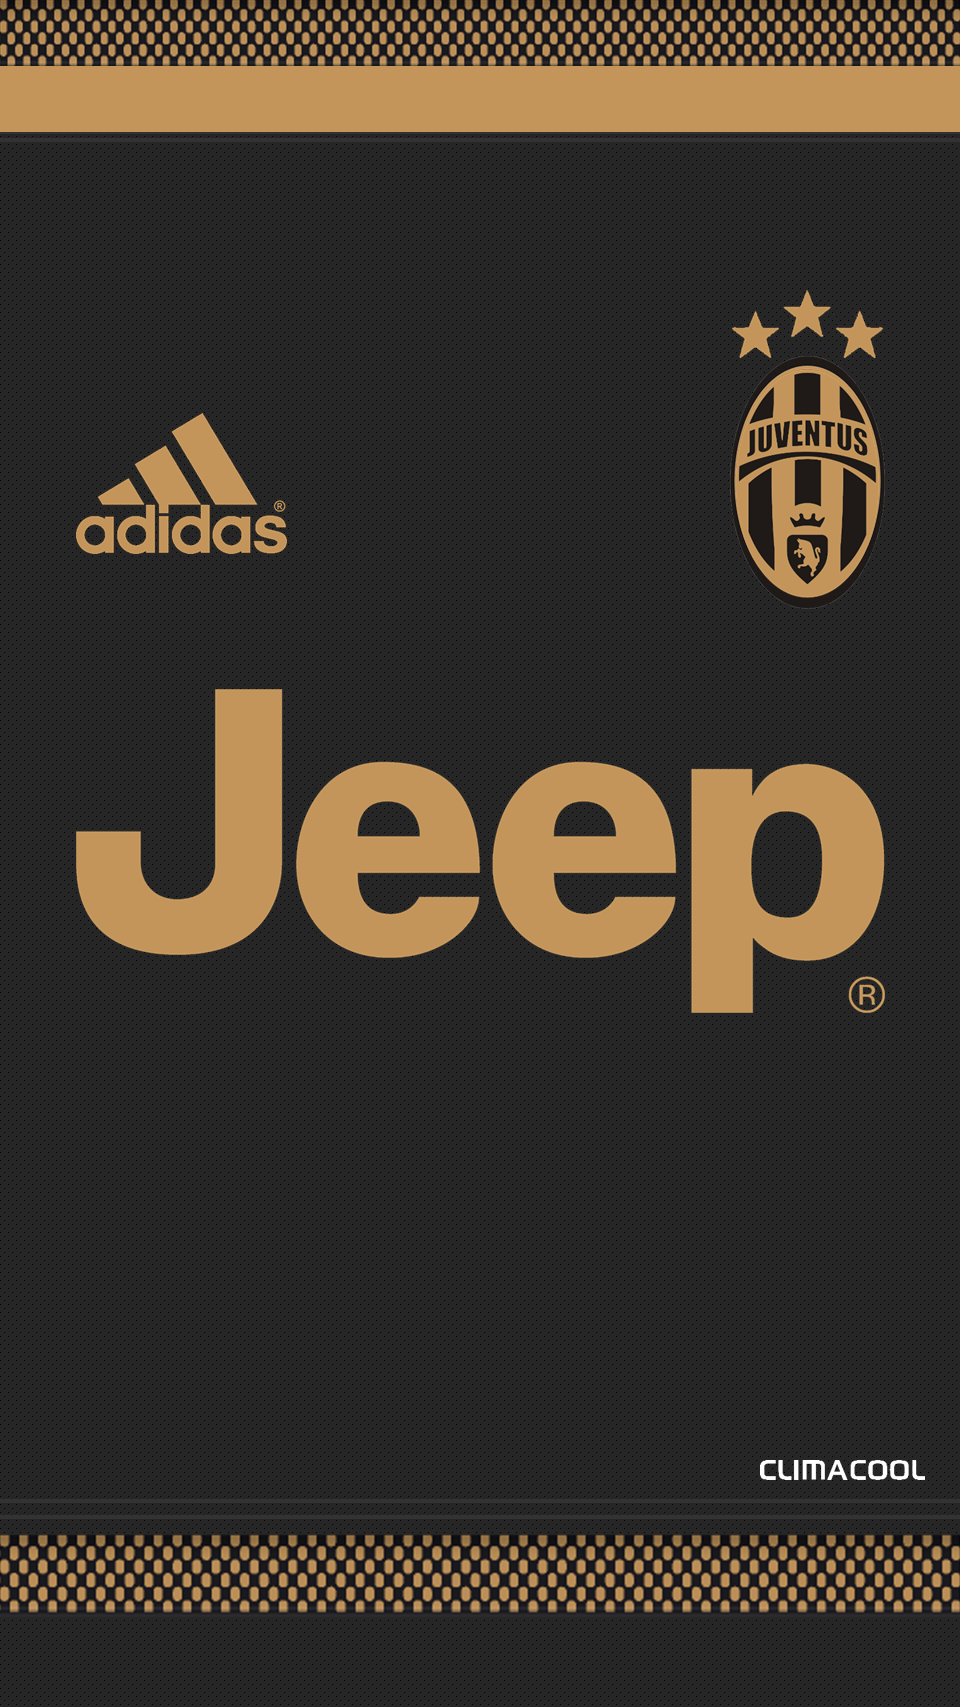 Juventus3_Simple2.png